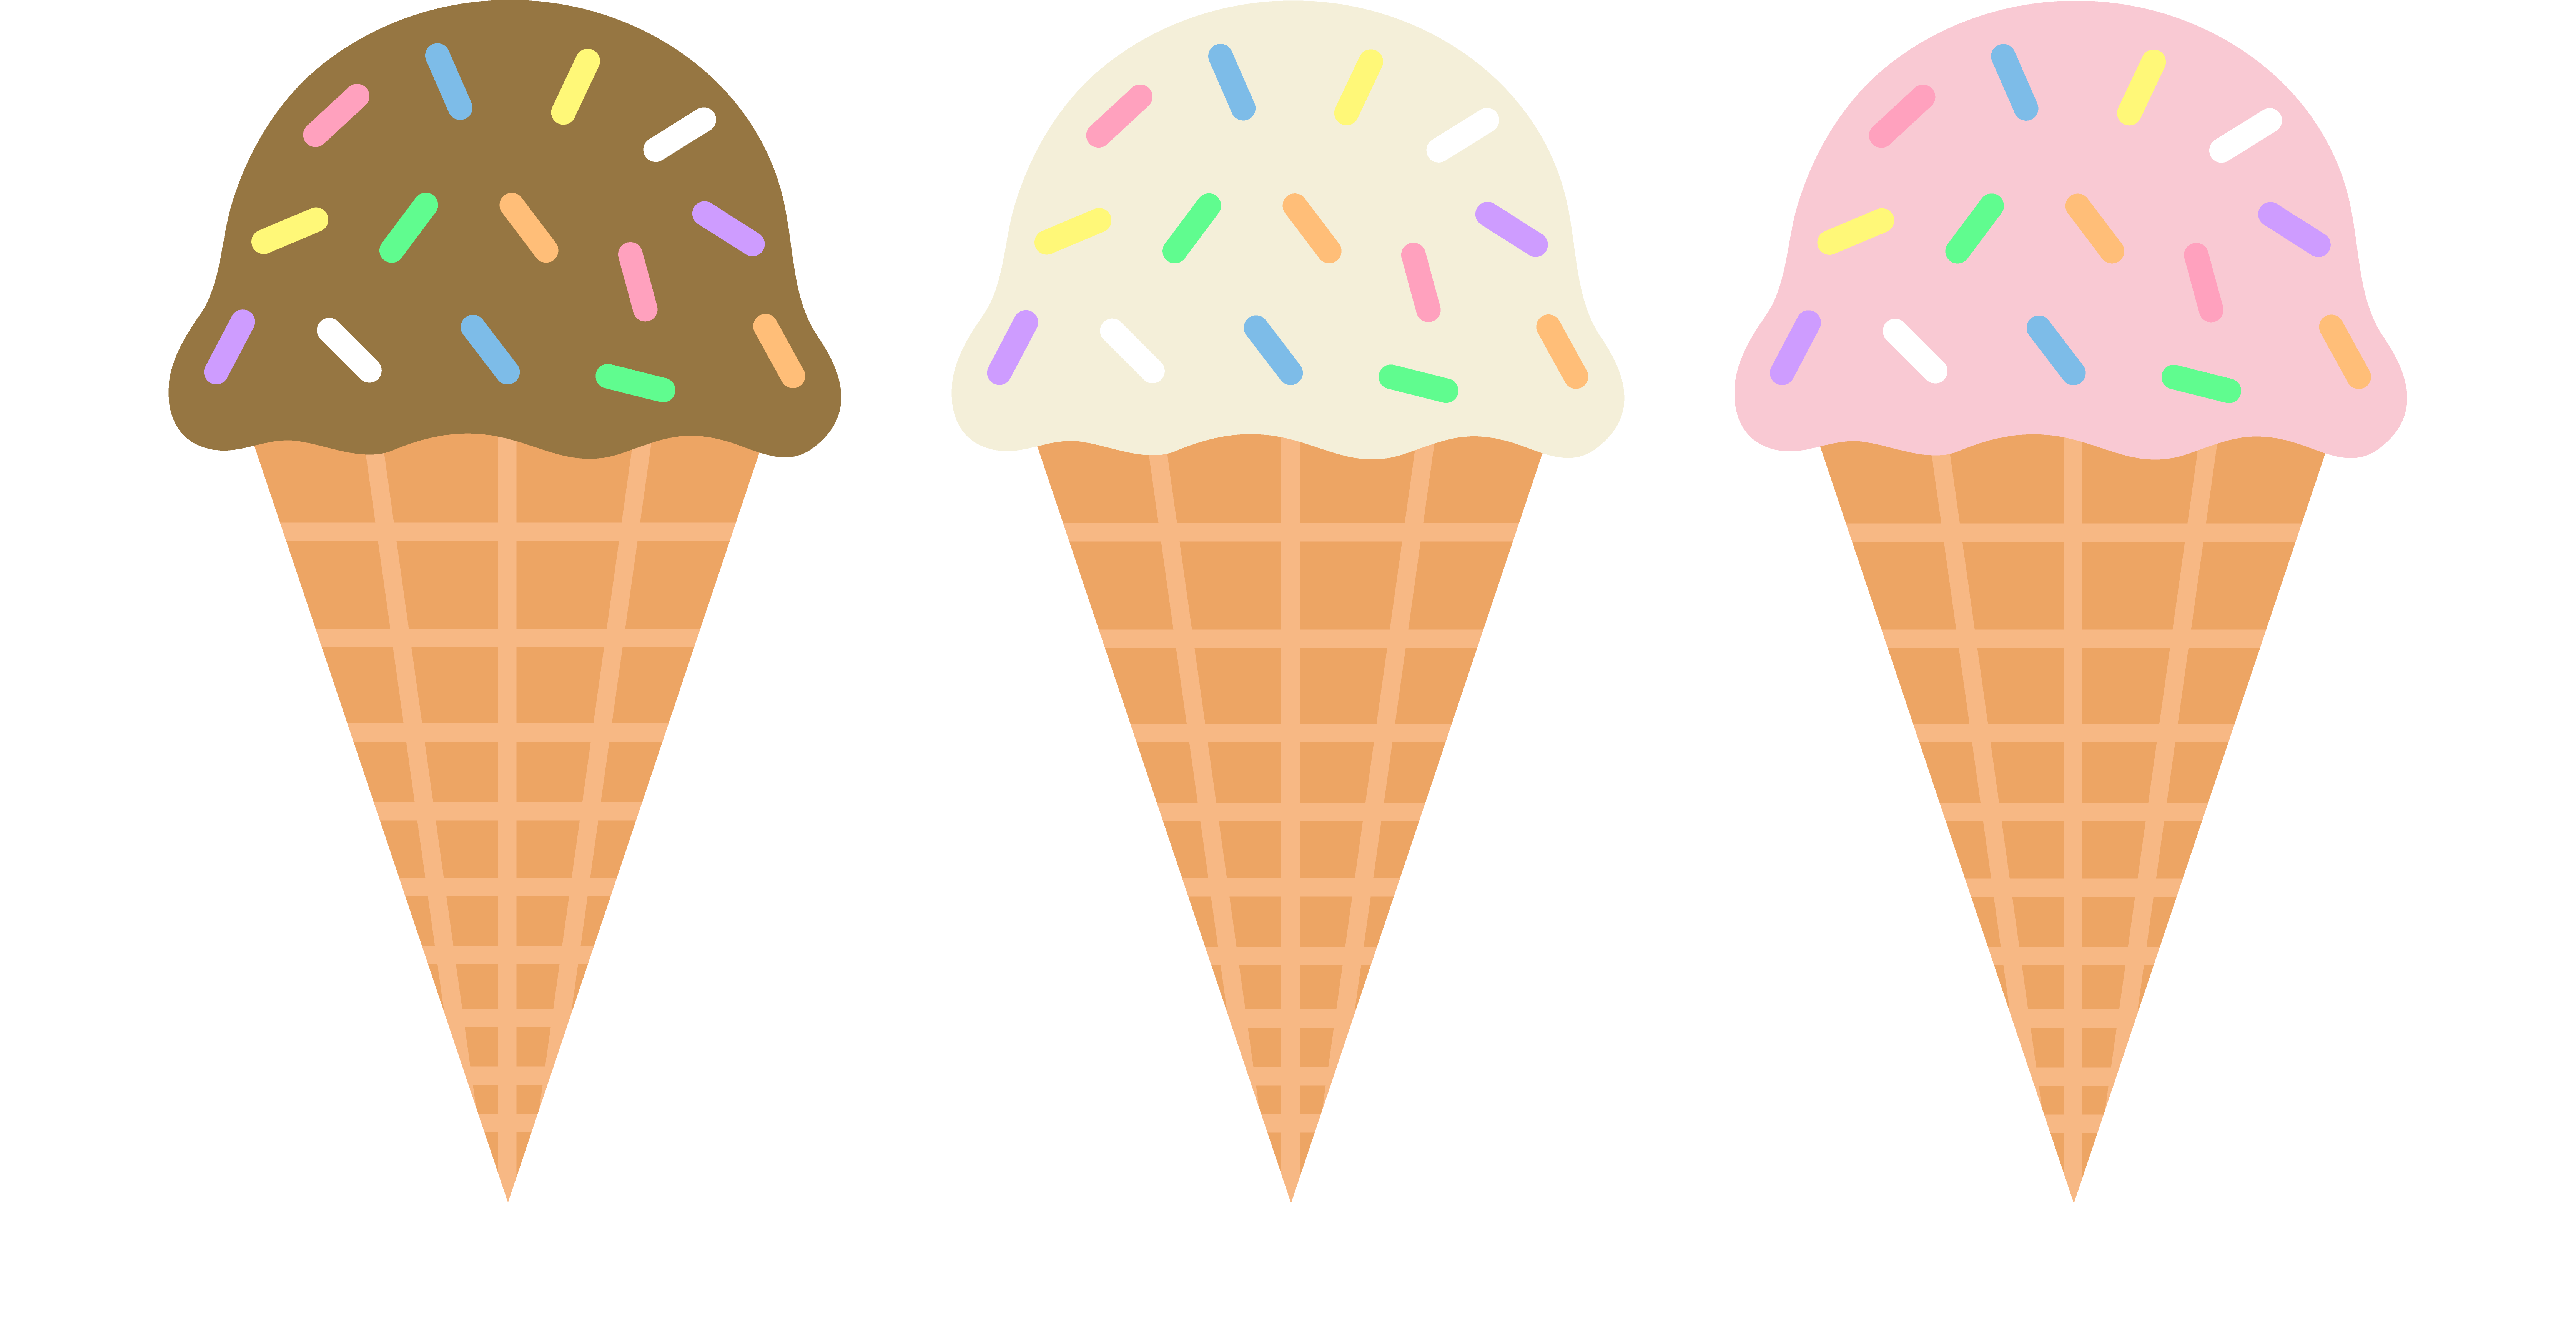 Ice Cream Clipart Ice Cream C